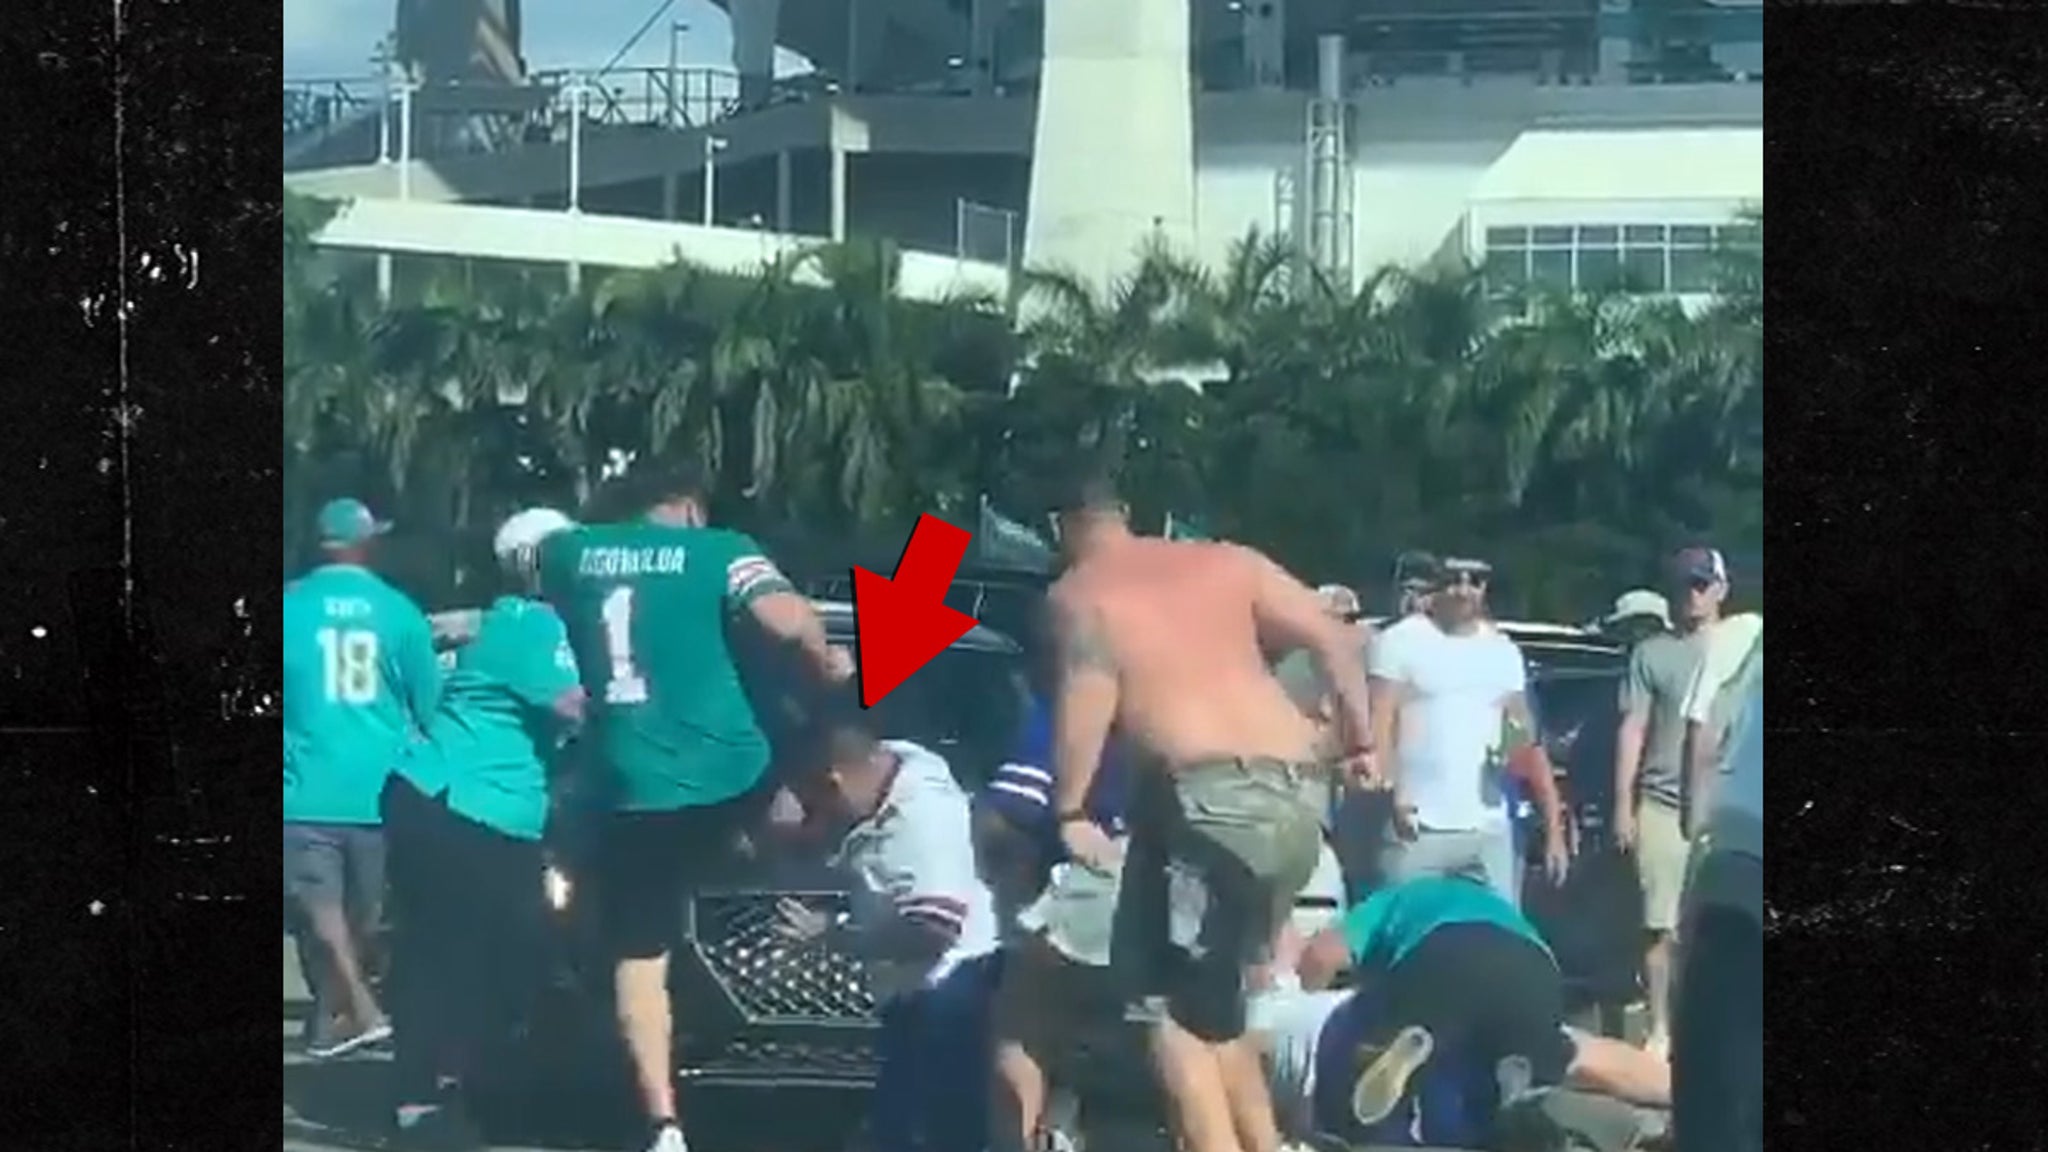 Josh Allen fan kicked in face in wild brawl outside Bills-Dolphins game